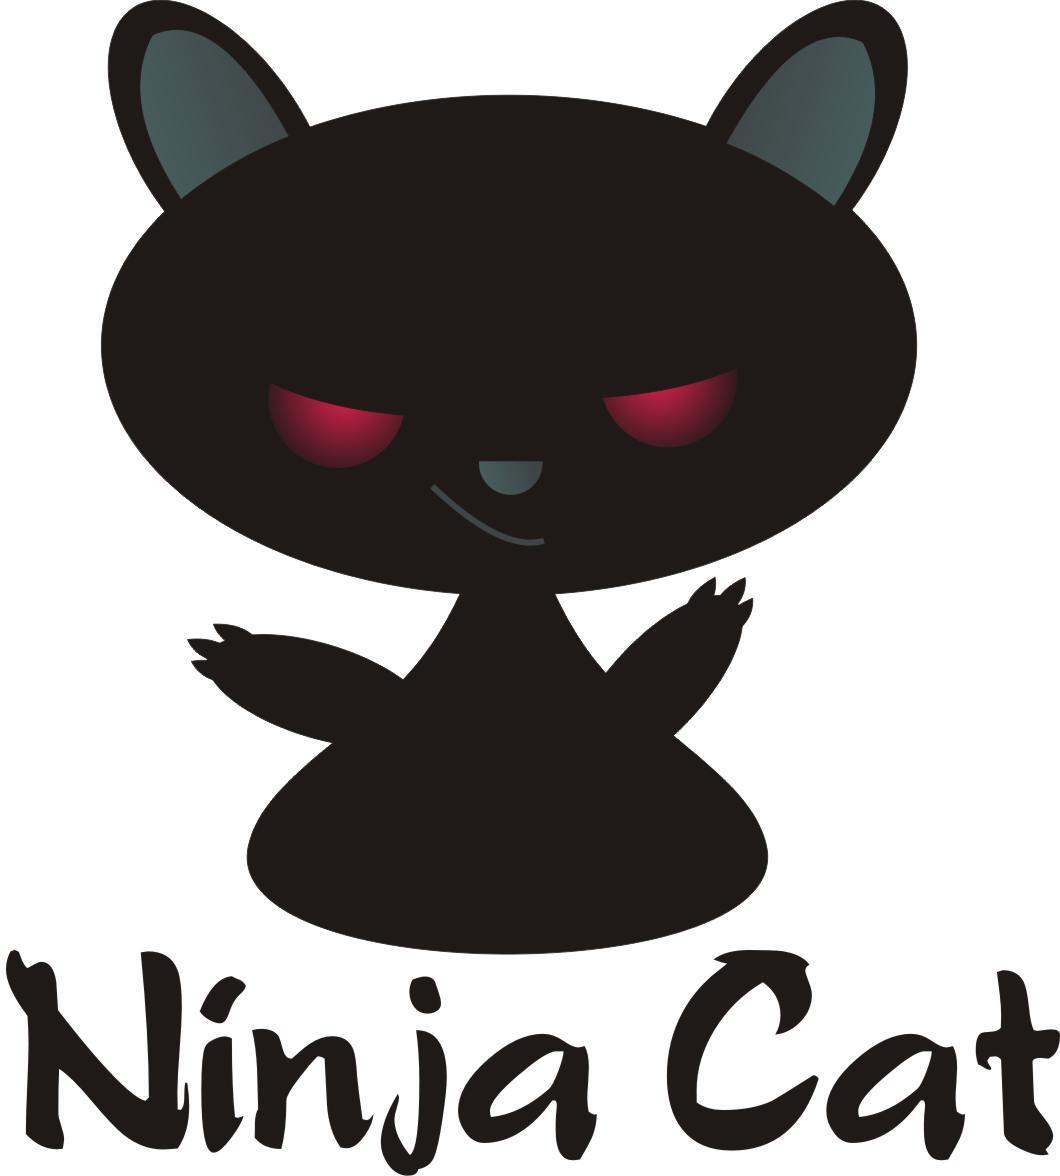 ninja cat game free download